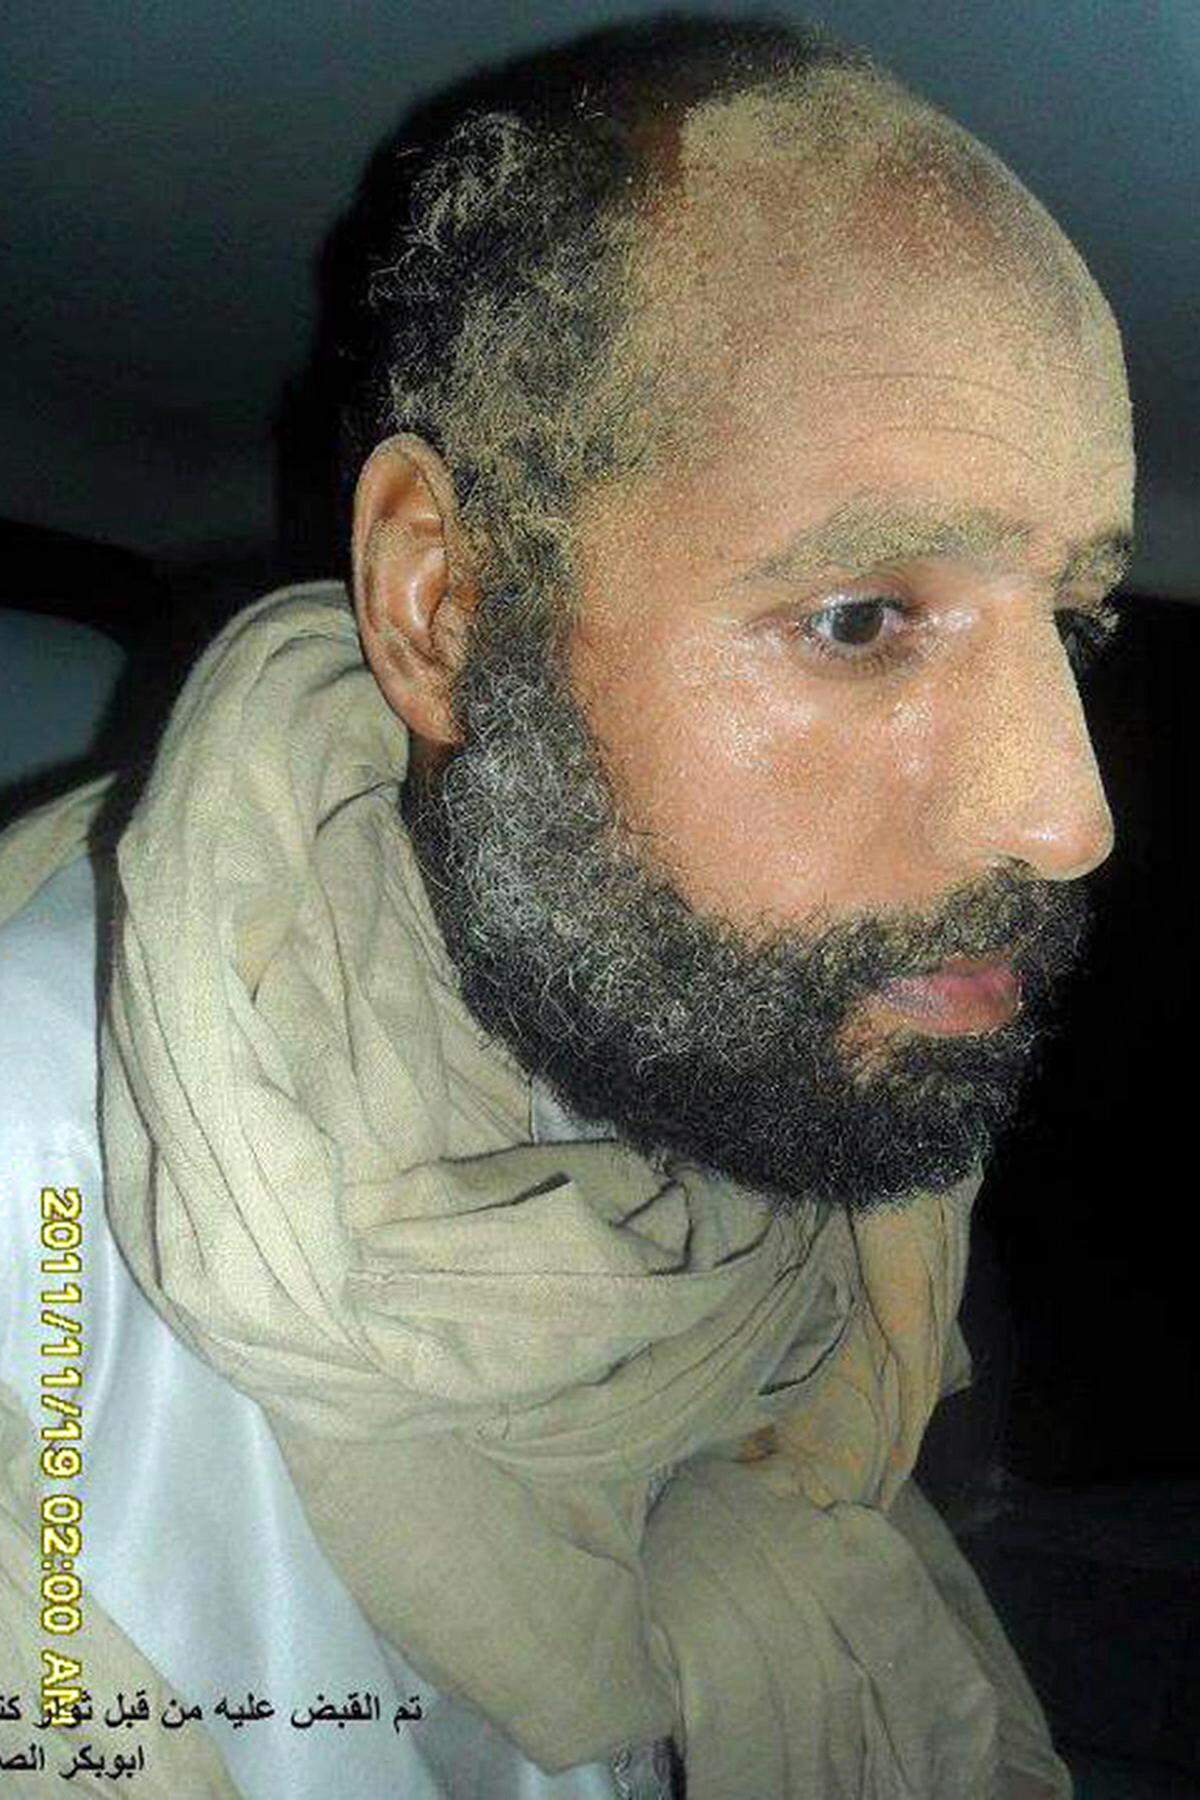 19. November: Saif al-Islam wird gefasst. Der Übergangsrat will dem Sohn des verstorbenen Diktators in Libyen den Prozess machen. Gegen ihn liegt auch ein Haftbefehl des Internationalen Strafgerichtshofs (IStGH) wegen Verbrechen gegen die Menschlichkeit vor.